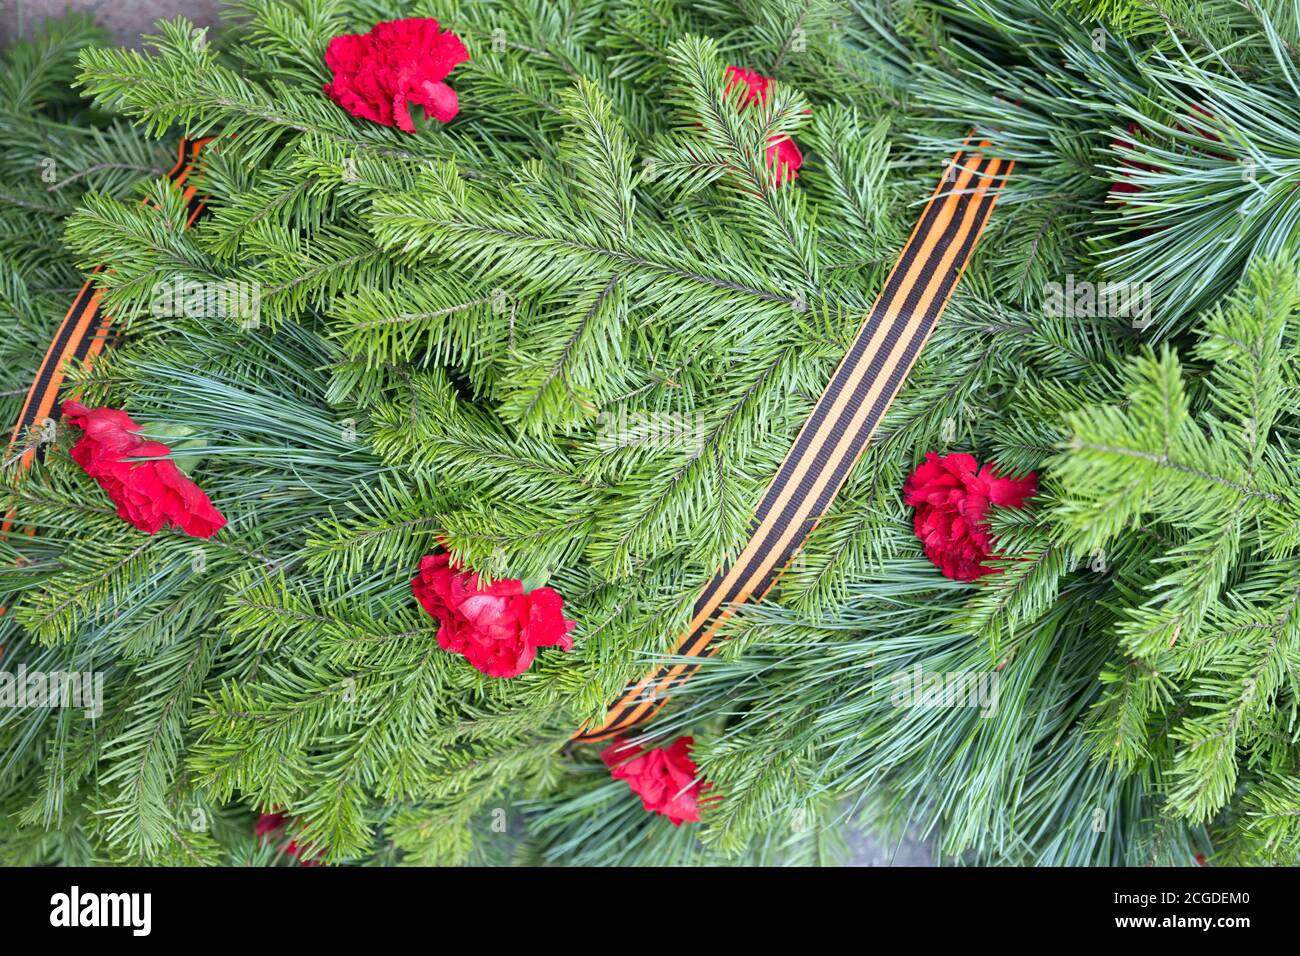 Arrière-plan des branches de conifères avec des fleurs d'œillets et le ruban de Saint-Georges pour le jour de la victoire pendant la Seconde Guerre mondiale. Banque D'Images